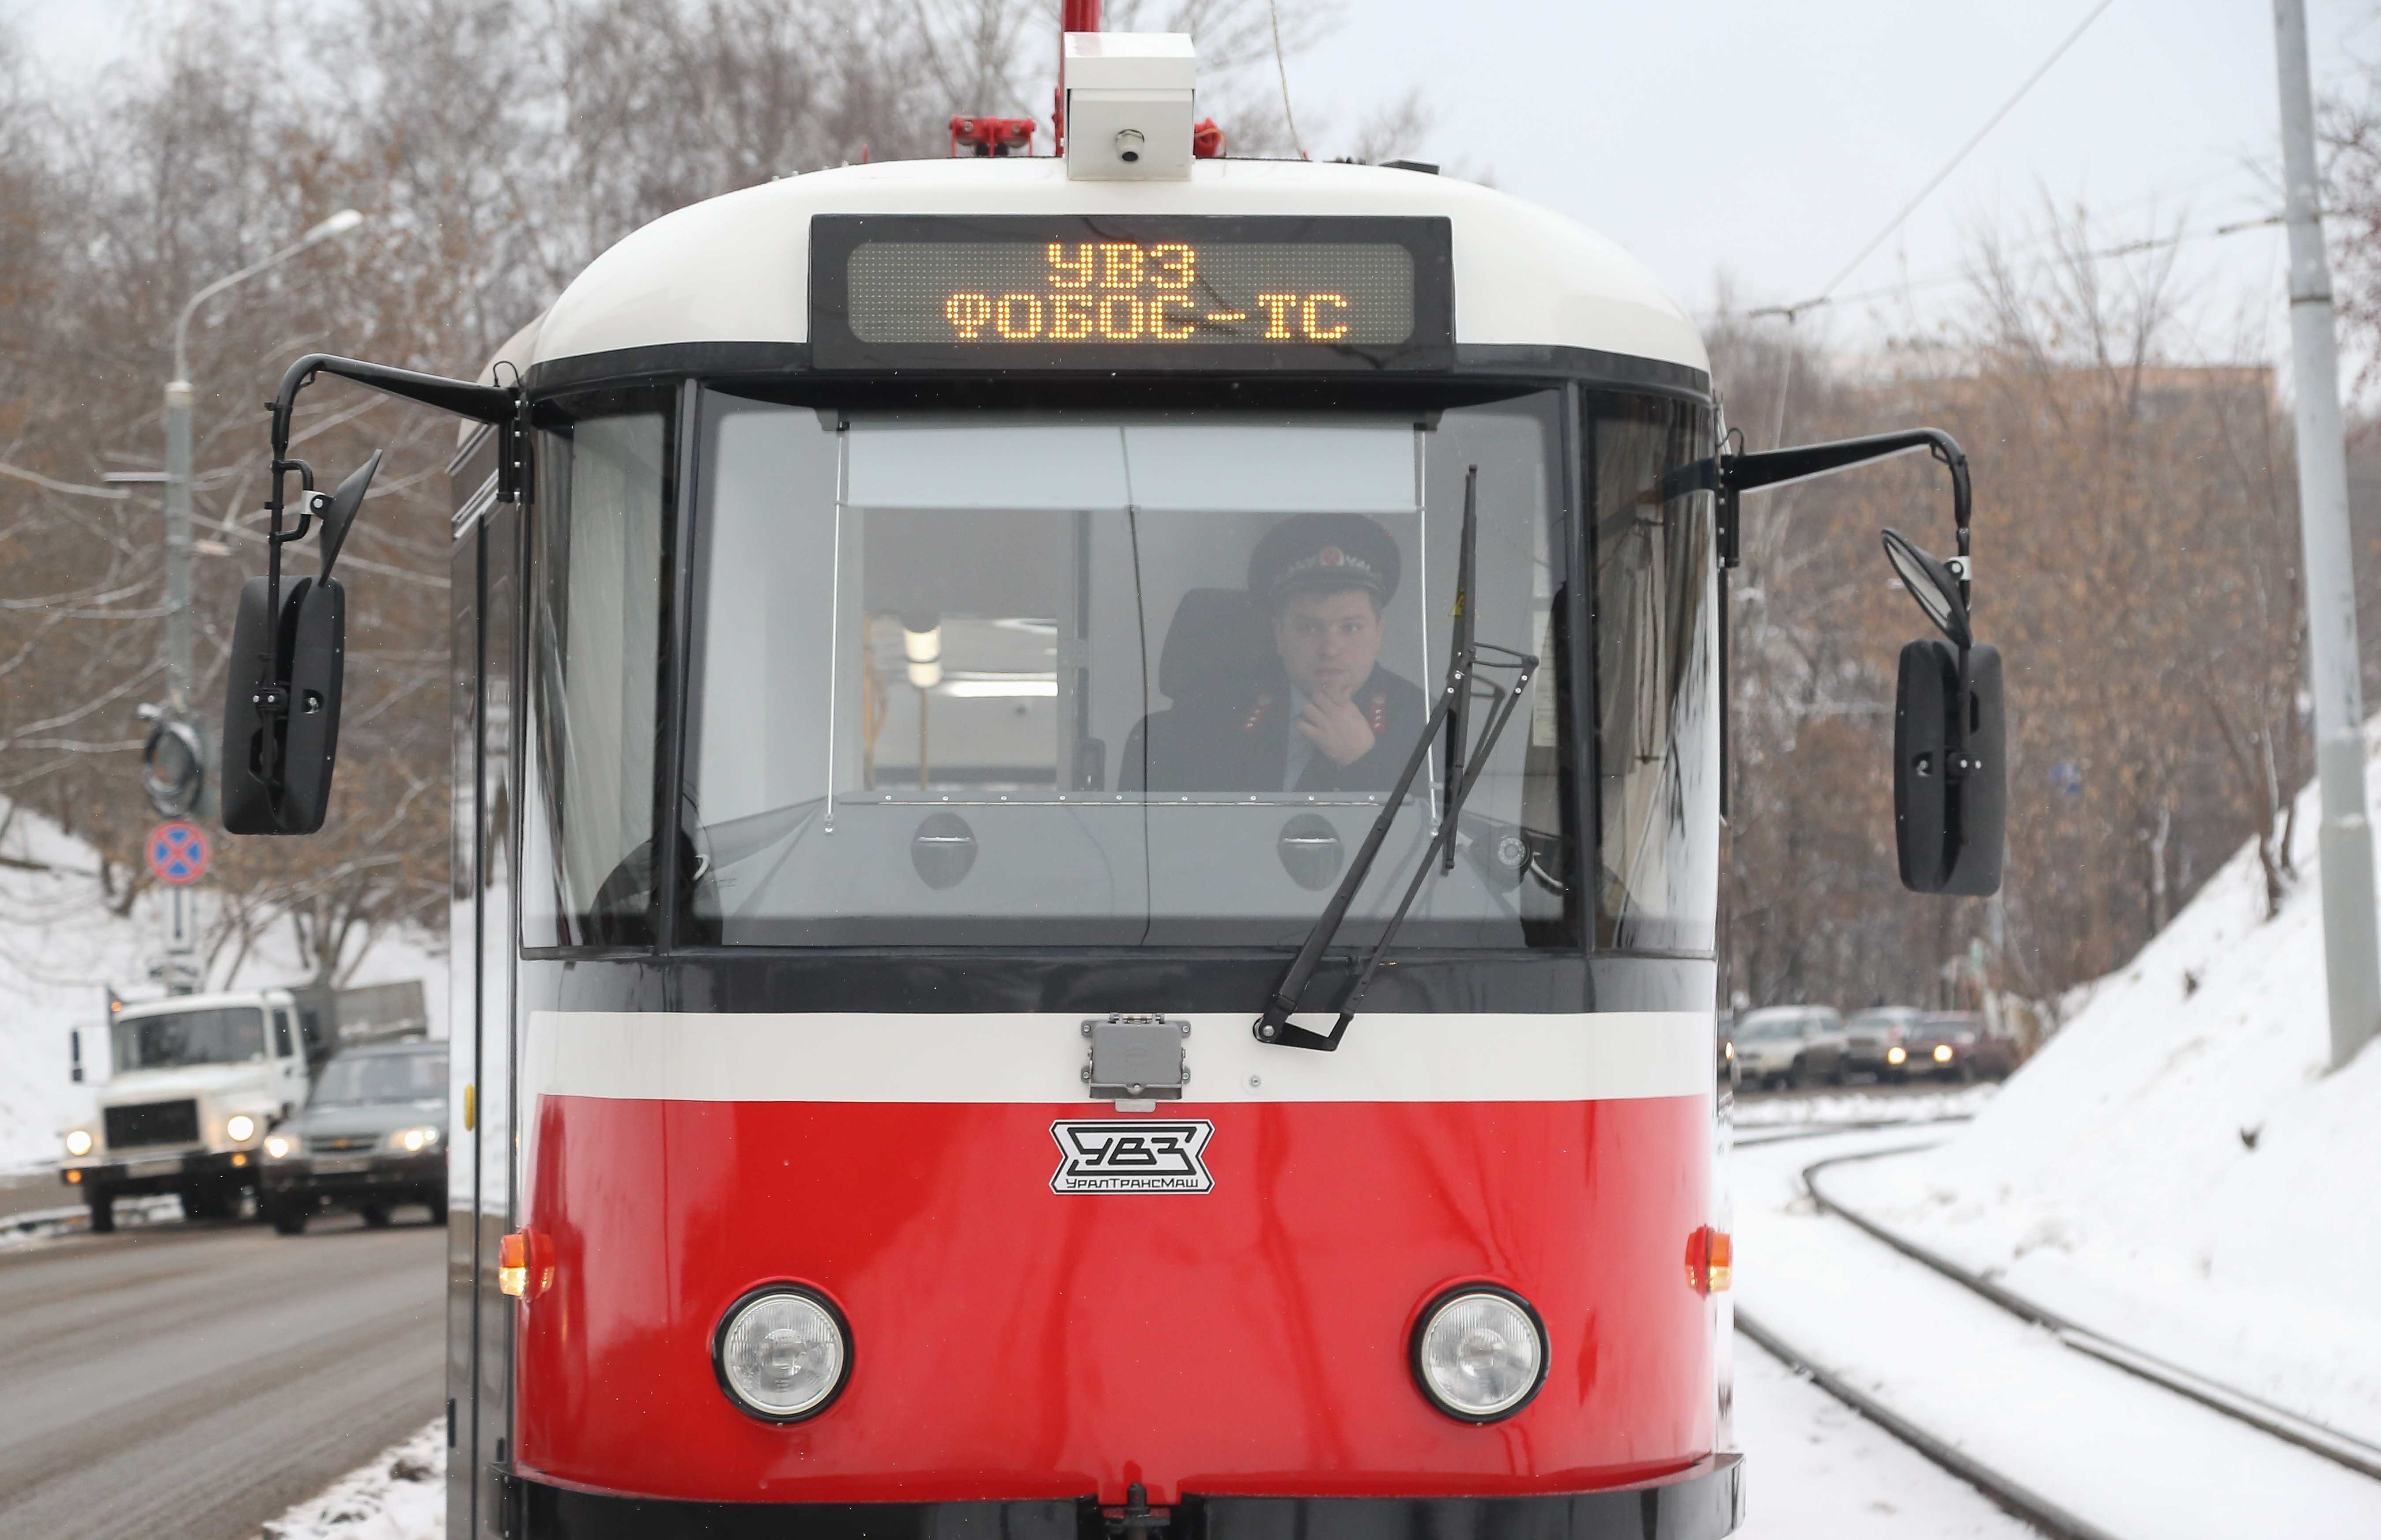 Новые трамвайные вагоны начнут производить в Нижнем Новгороде (ФОТО) - фото 1